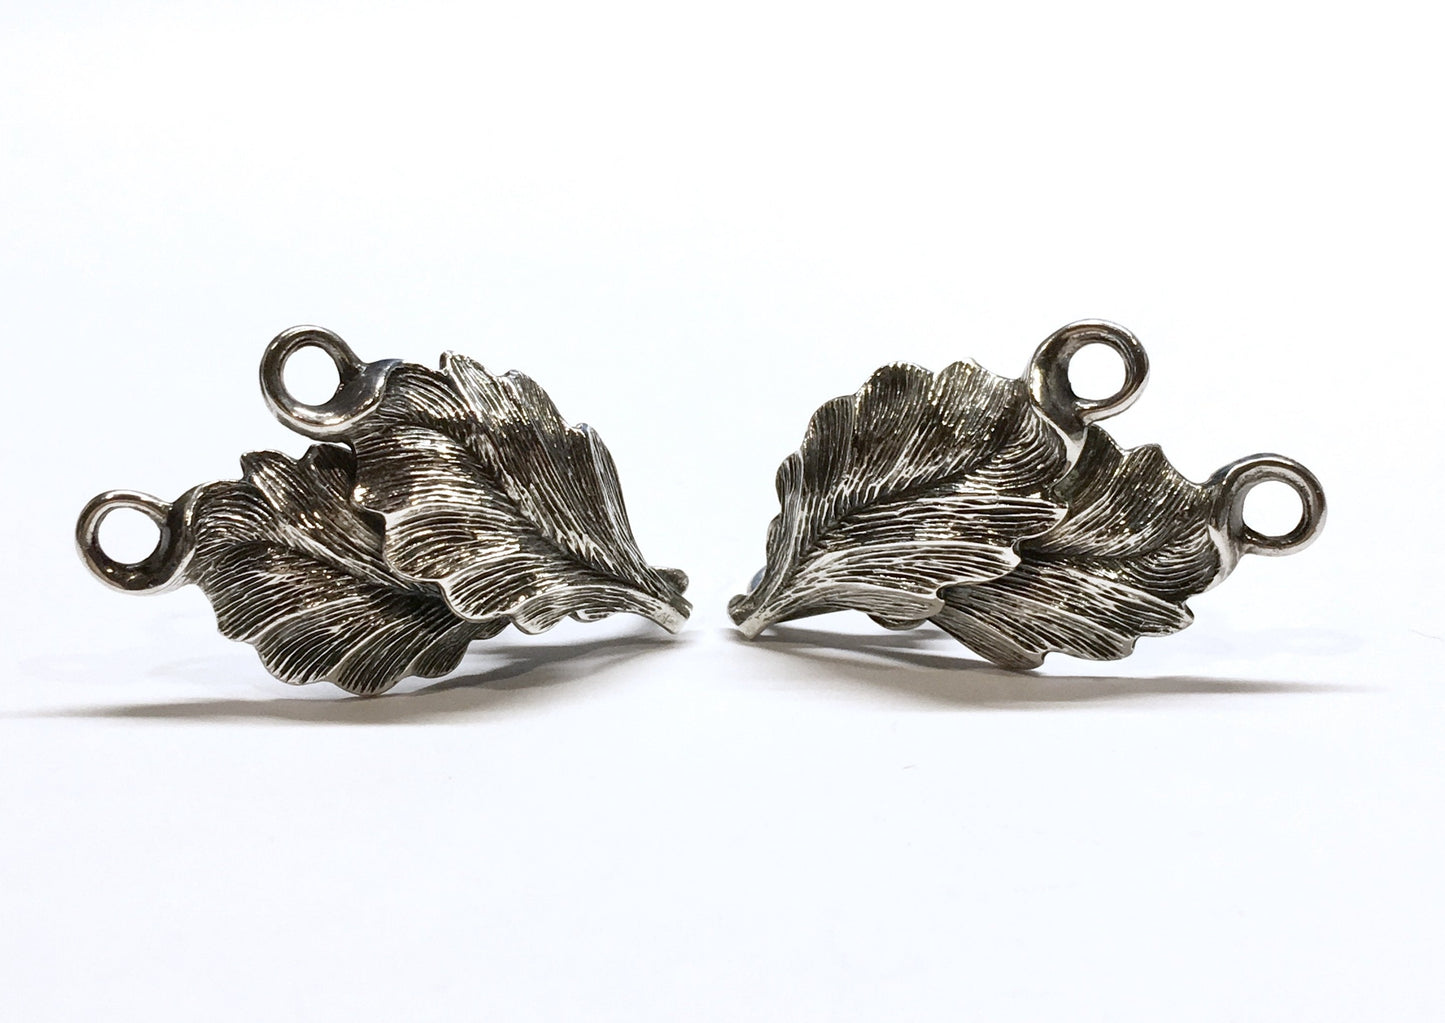 Screw Back Earrings, Vintage Sterling Silver Fern Leaf Design Clip-On Earrings - Discount Estate Jewelry